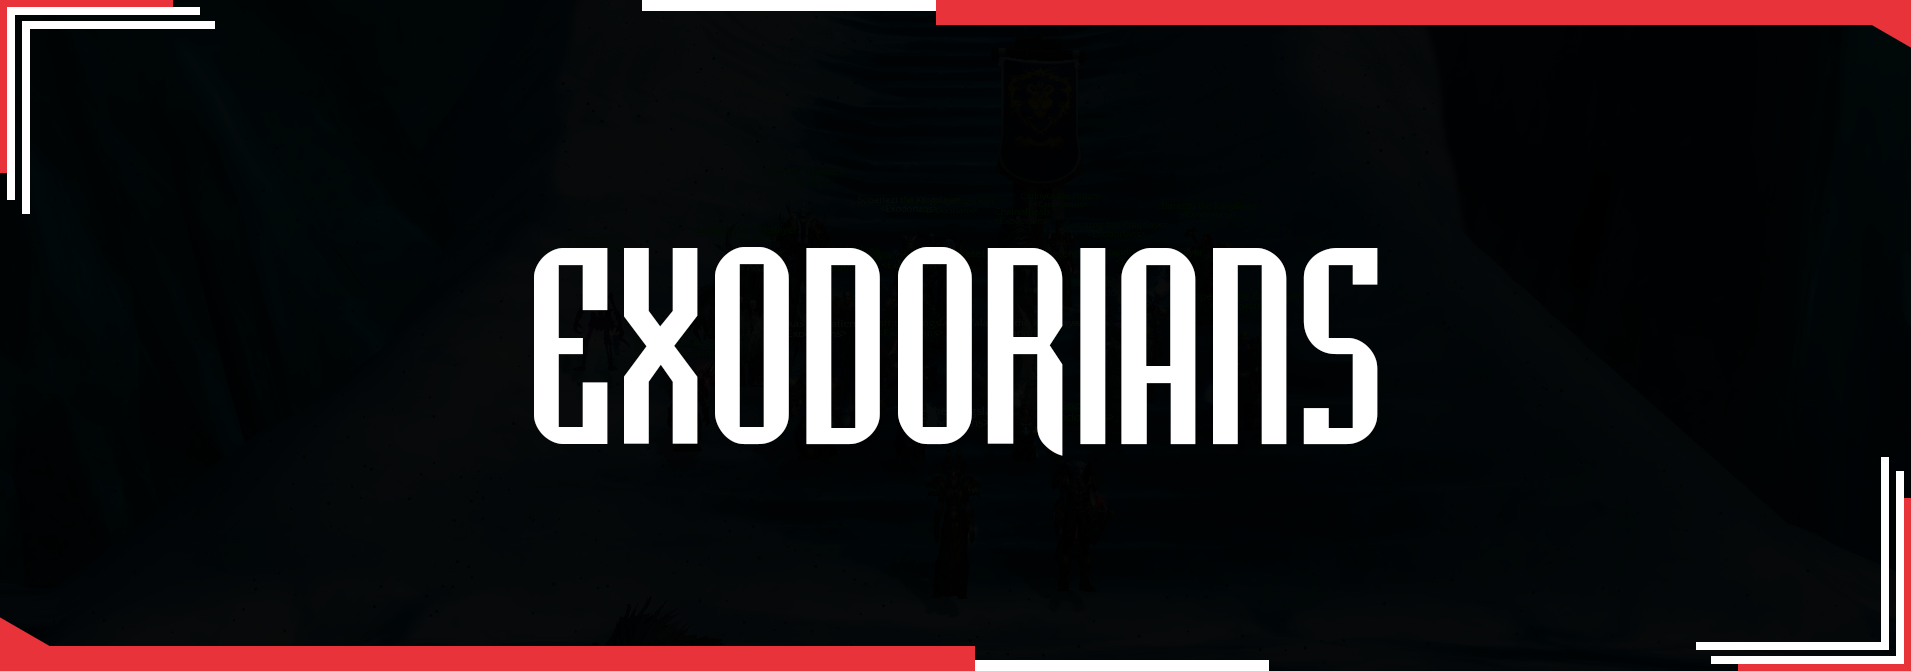 Exodorians